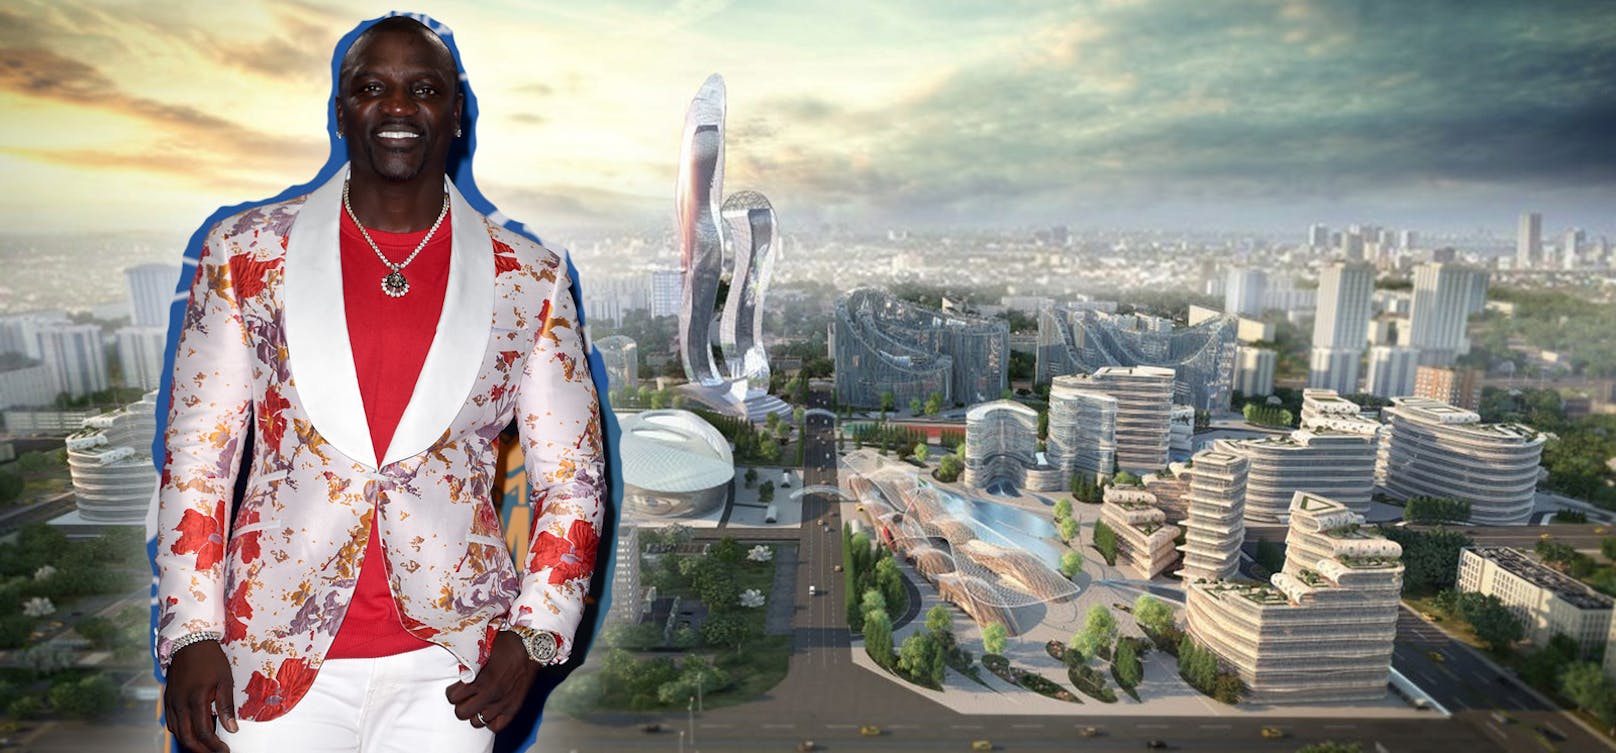 Akon ist Musiker, Songwriter und Produzent – und neuerdings auch Städtebauer: Im Senegal plant er eine eigene Stadt, die "Akon City".